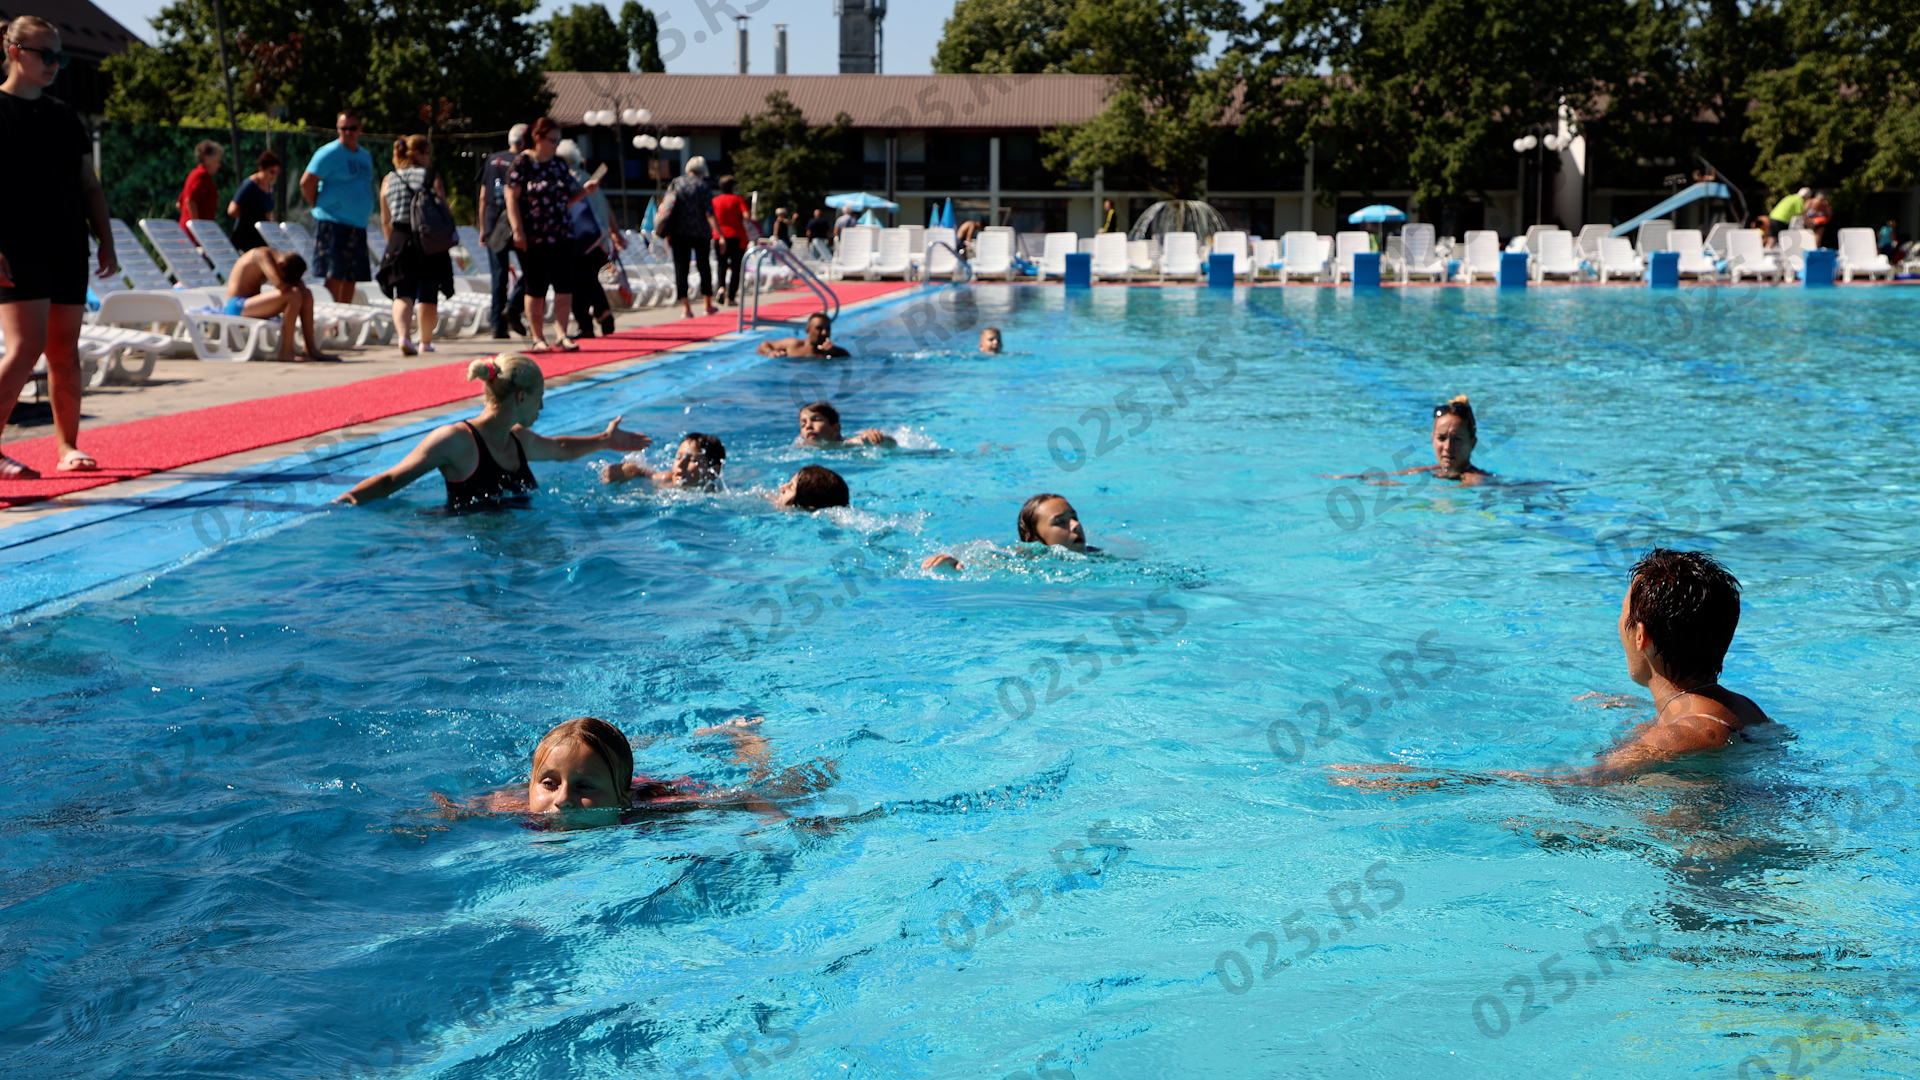 škola plivanja na bazenima “Junaković”-apatin 